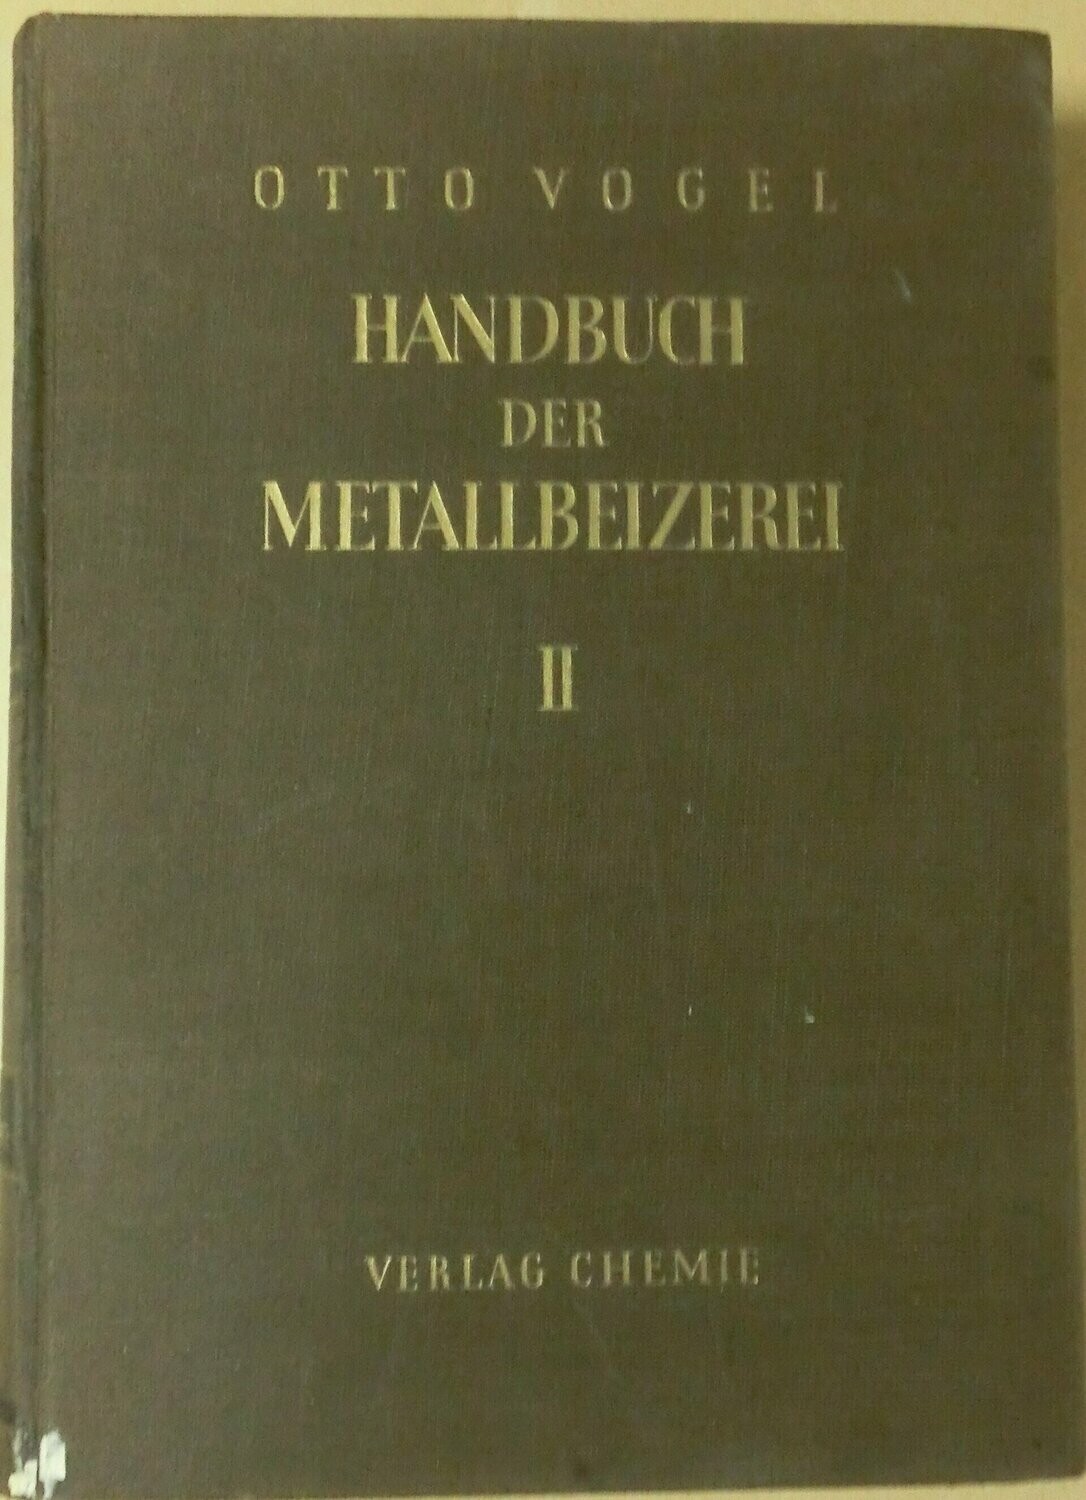 Handbuch der metallbeizerei II, Otto Vogel